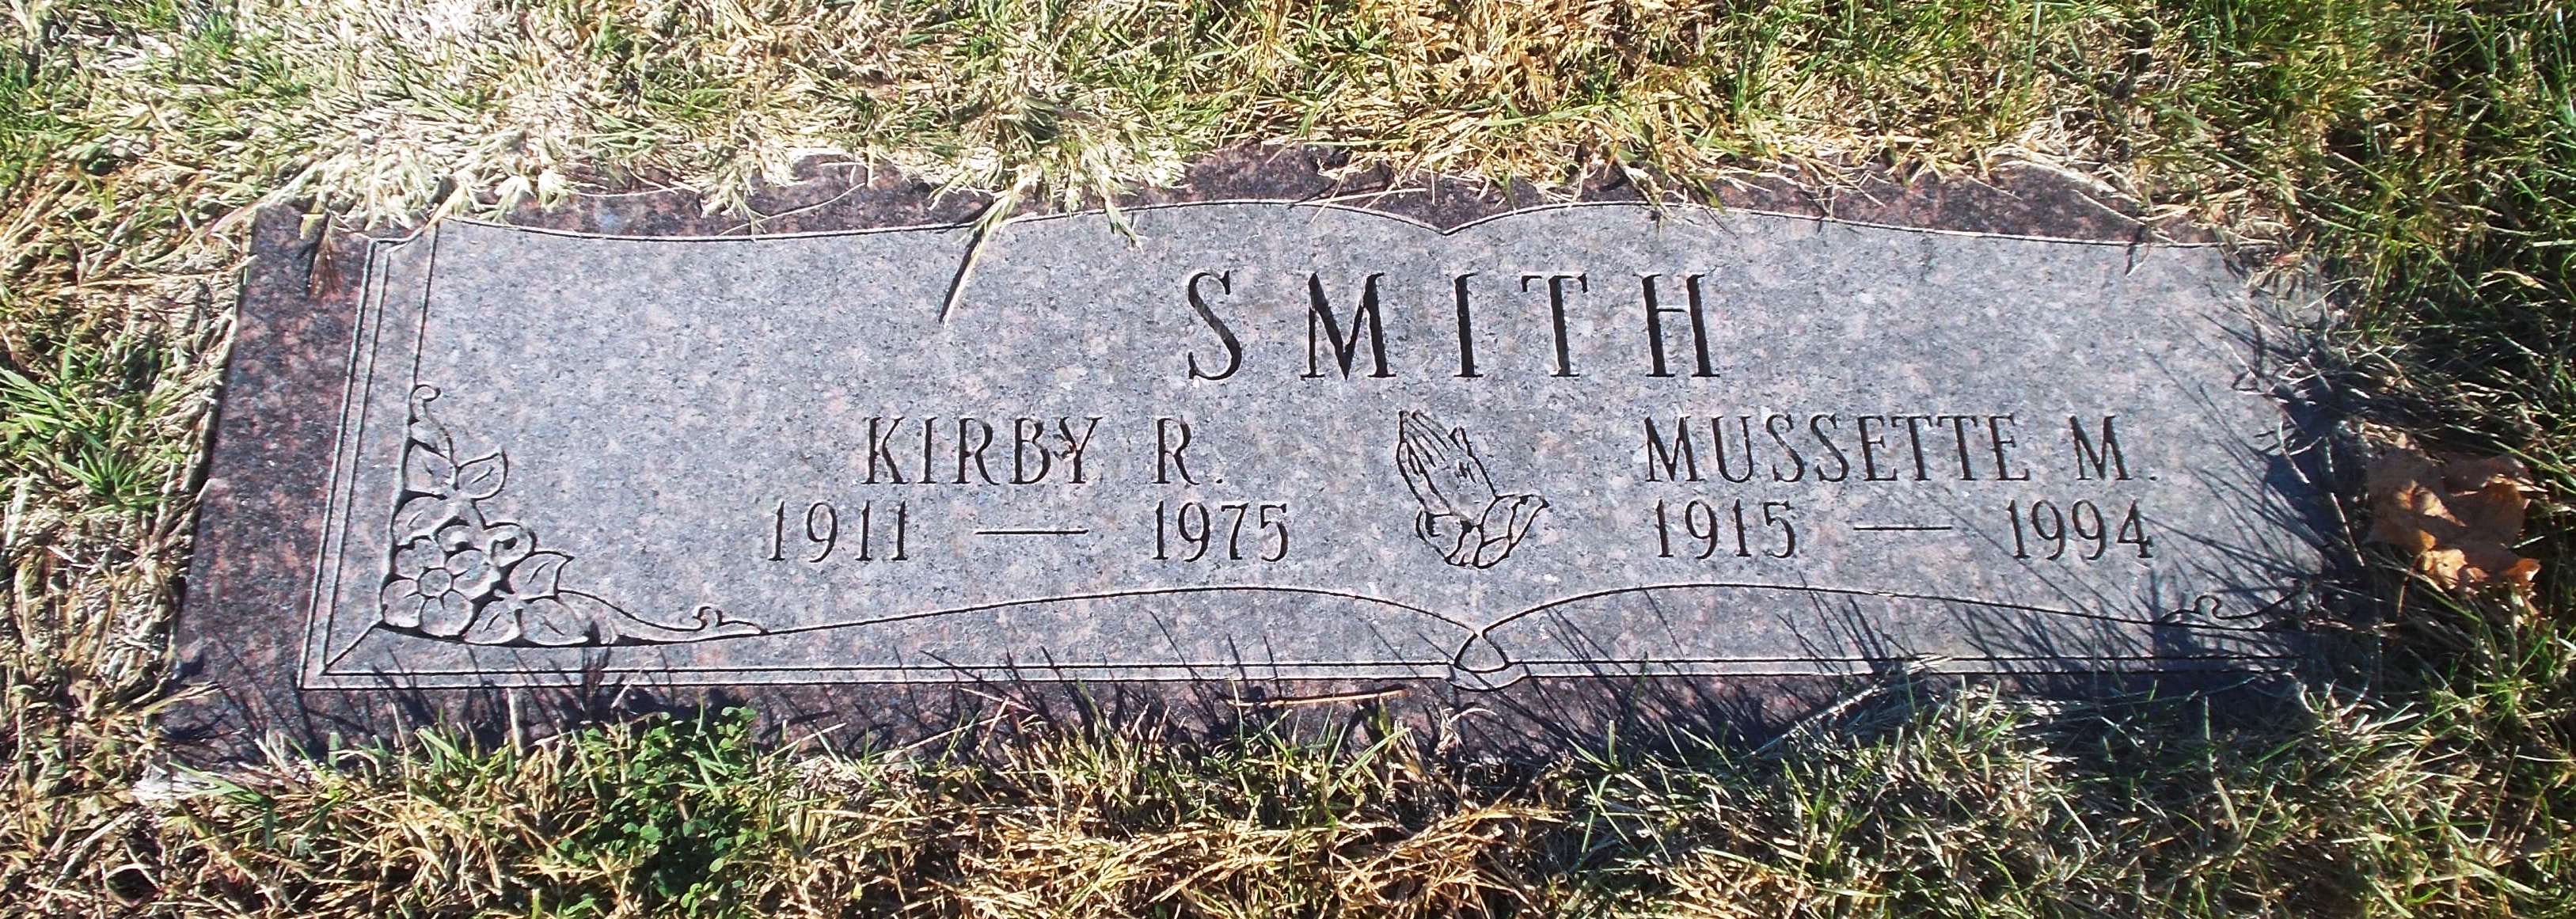 Kirby R Smith